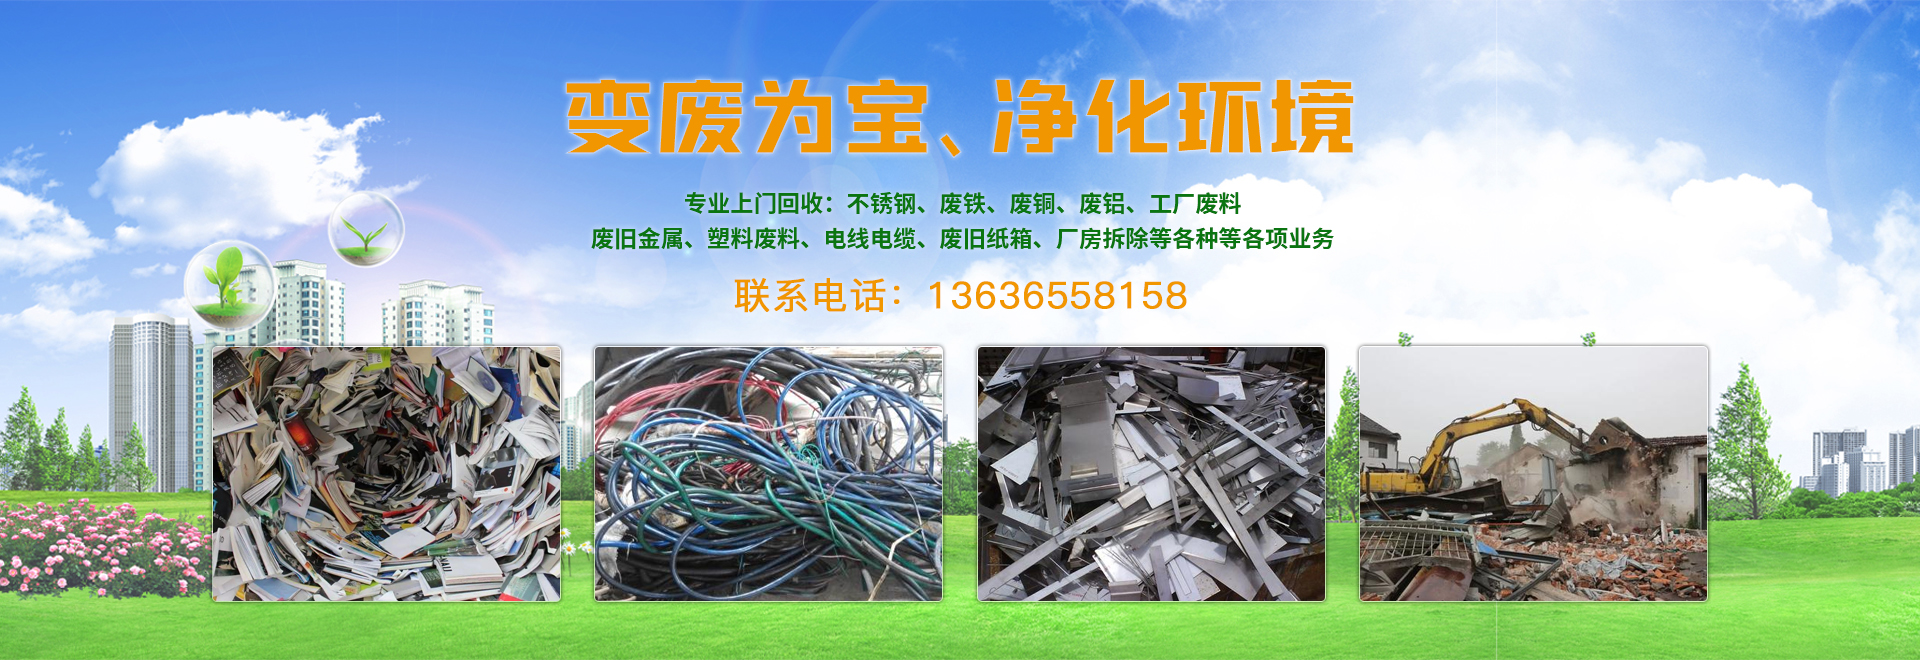 上海废品回收,上海废铁回收,上海塑料回收,上海不锈钢回收 ,上海废铜铝回收,上海废旧电缆电线回收